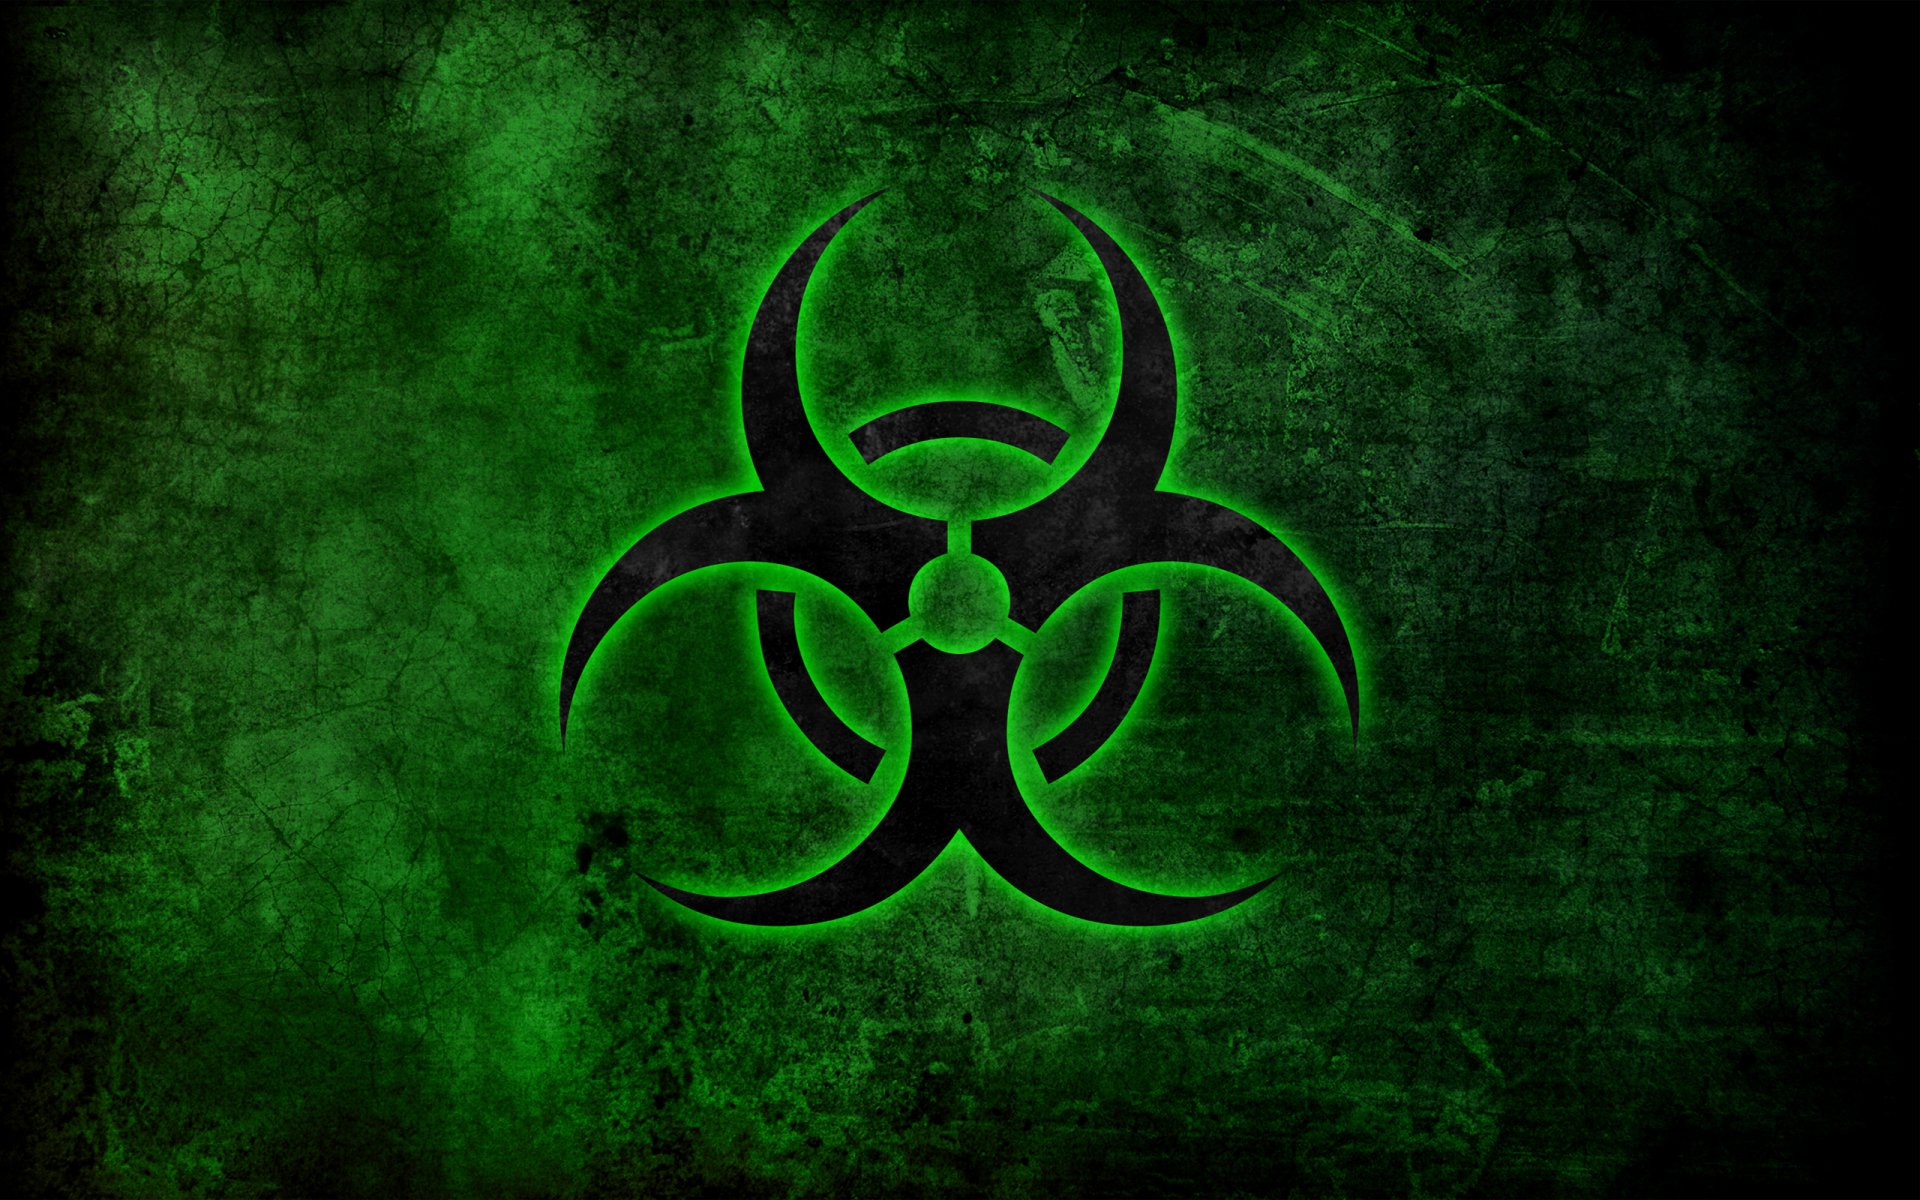 Biohazard Symbol Background - KibrisPDR